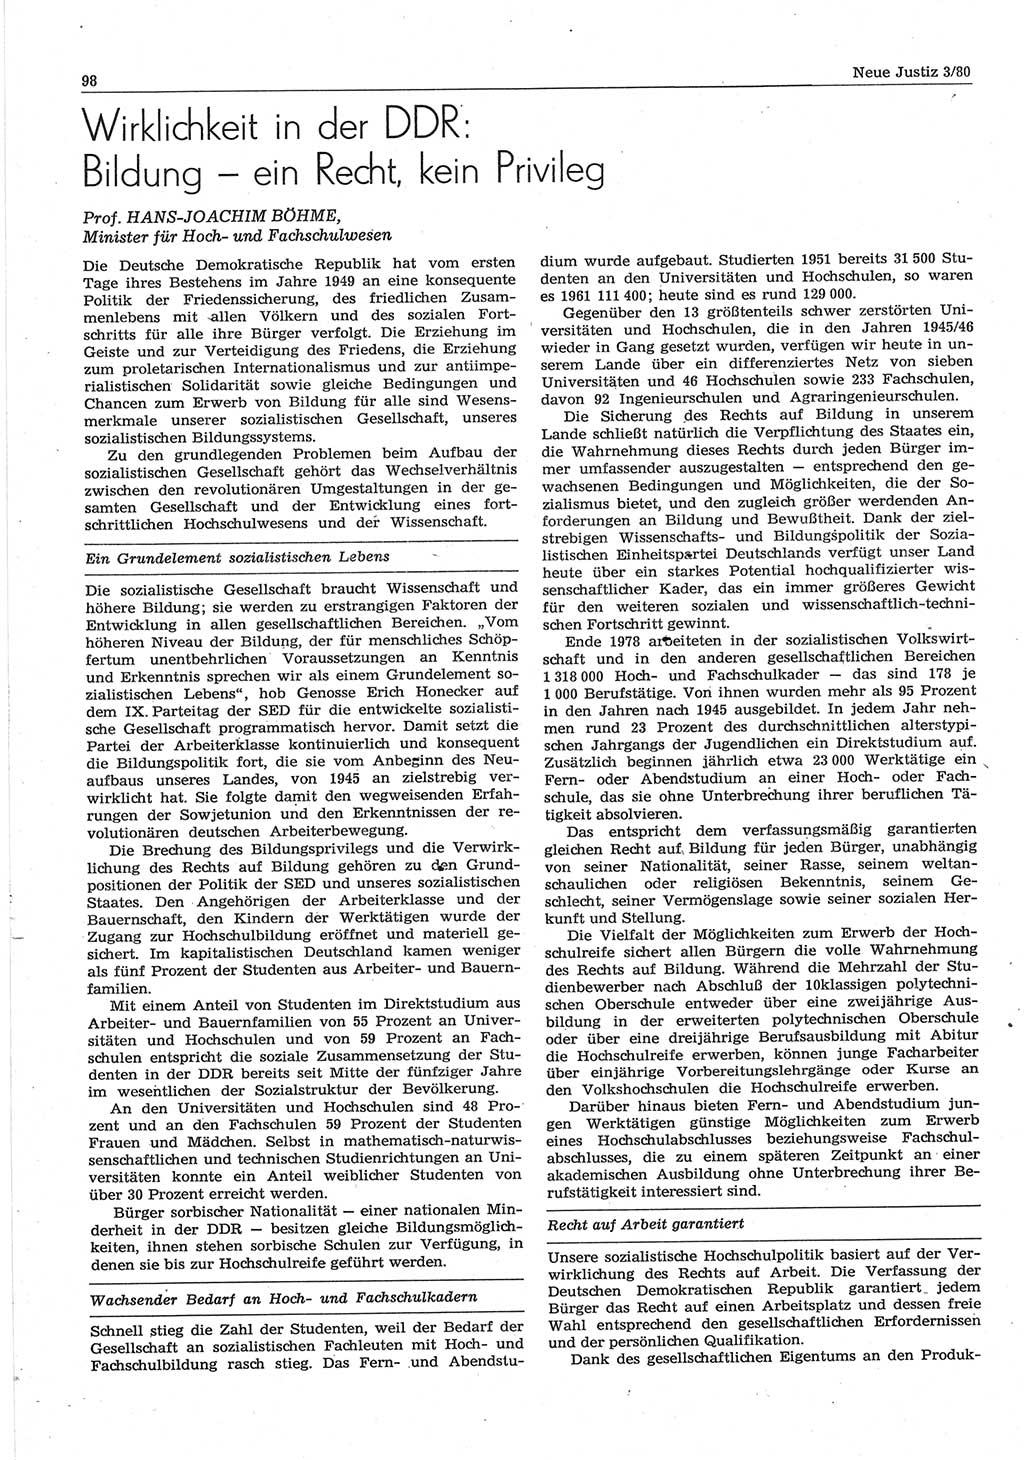 Neue Justiz (NJ), Zeitschrift für sozialistisches Recht und Gesetzlichkeit [Deutsche Demokratische Republik (DDR)], 34. Jahrgang 1980, Seite 98 (NJ DDR 1980, S. 98)